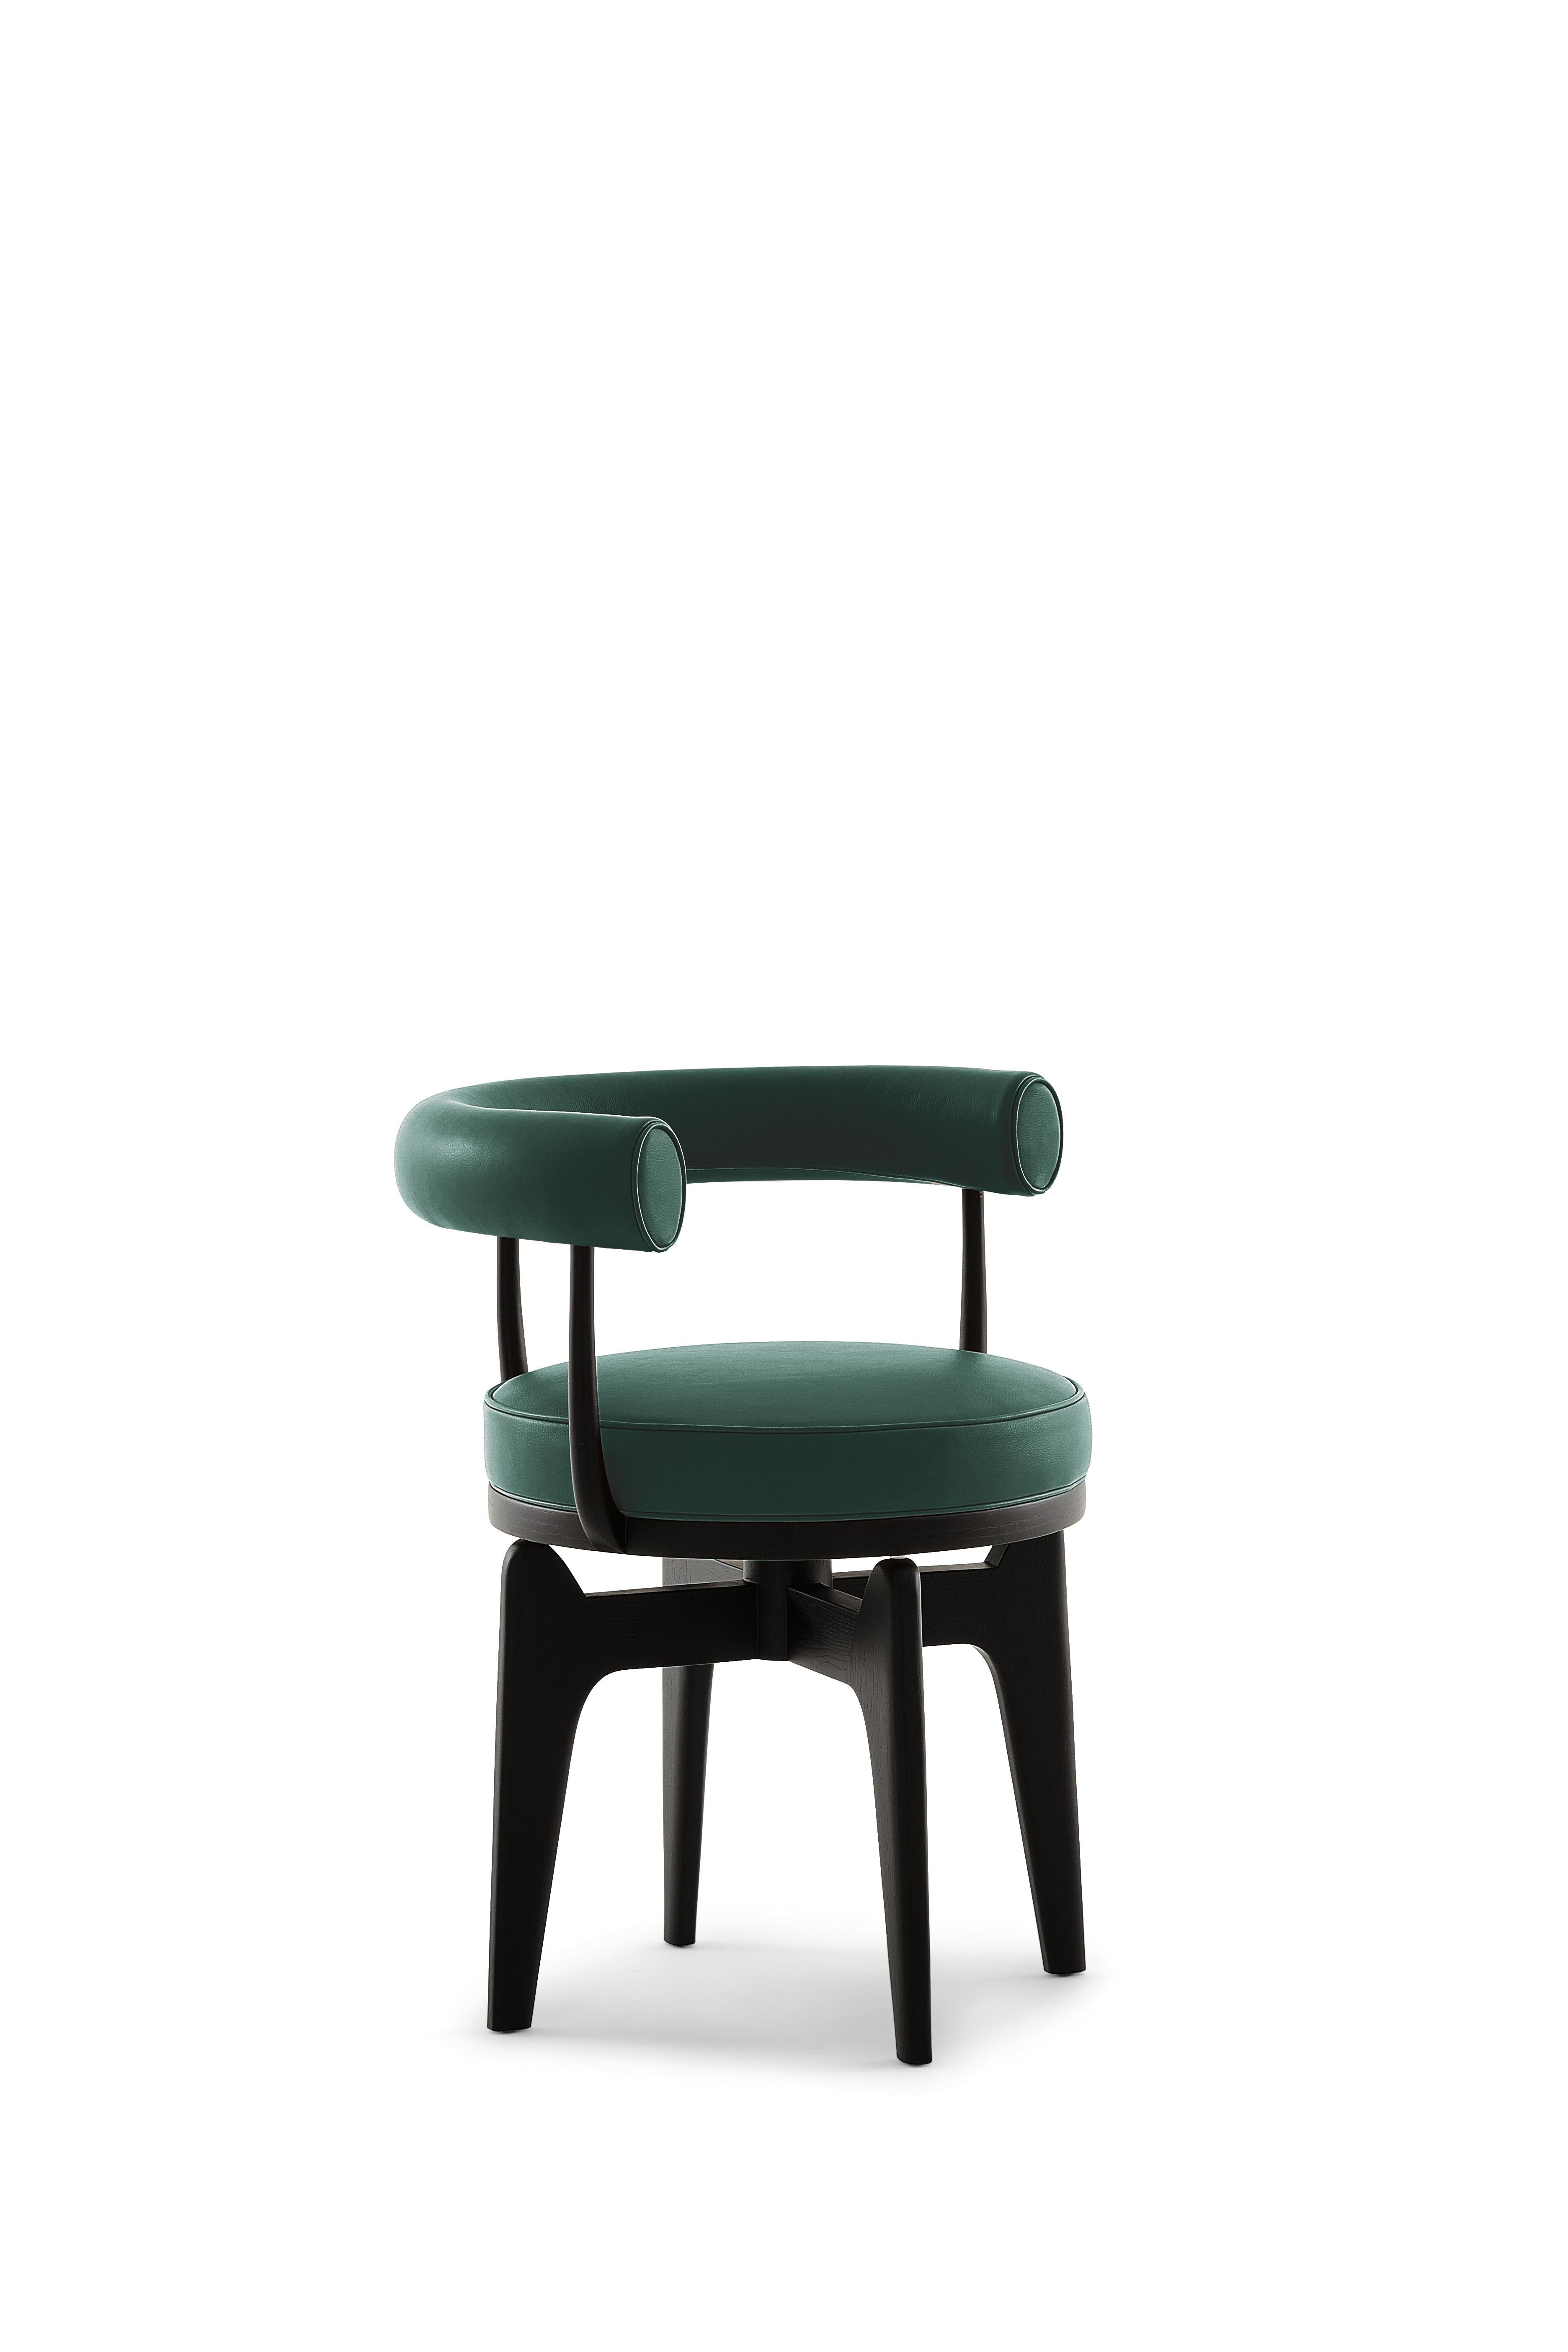 Charlotte Perriand Fauteuil Indochine
Fabriqué par Cassina en Italie.

Ce fauteuil pivotant est une reprise du LC7, dont la structure est en métal tubulaire, œuvre de Charlotte Perriand en 1927. Il a ensuite été exposé avec d'autres meubles que